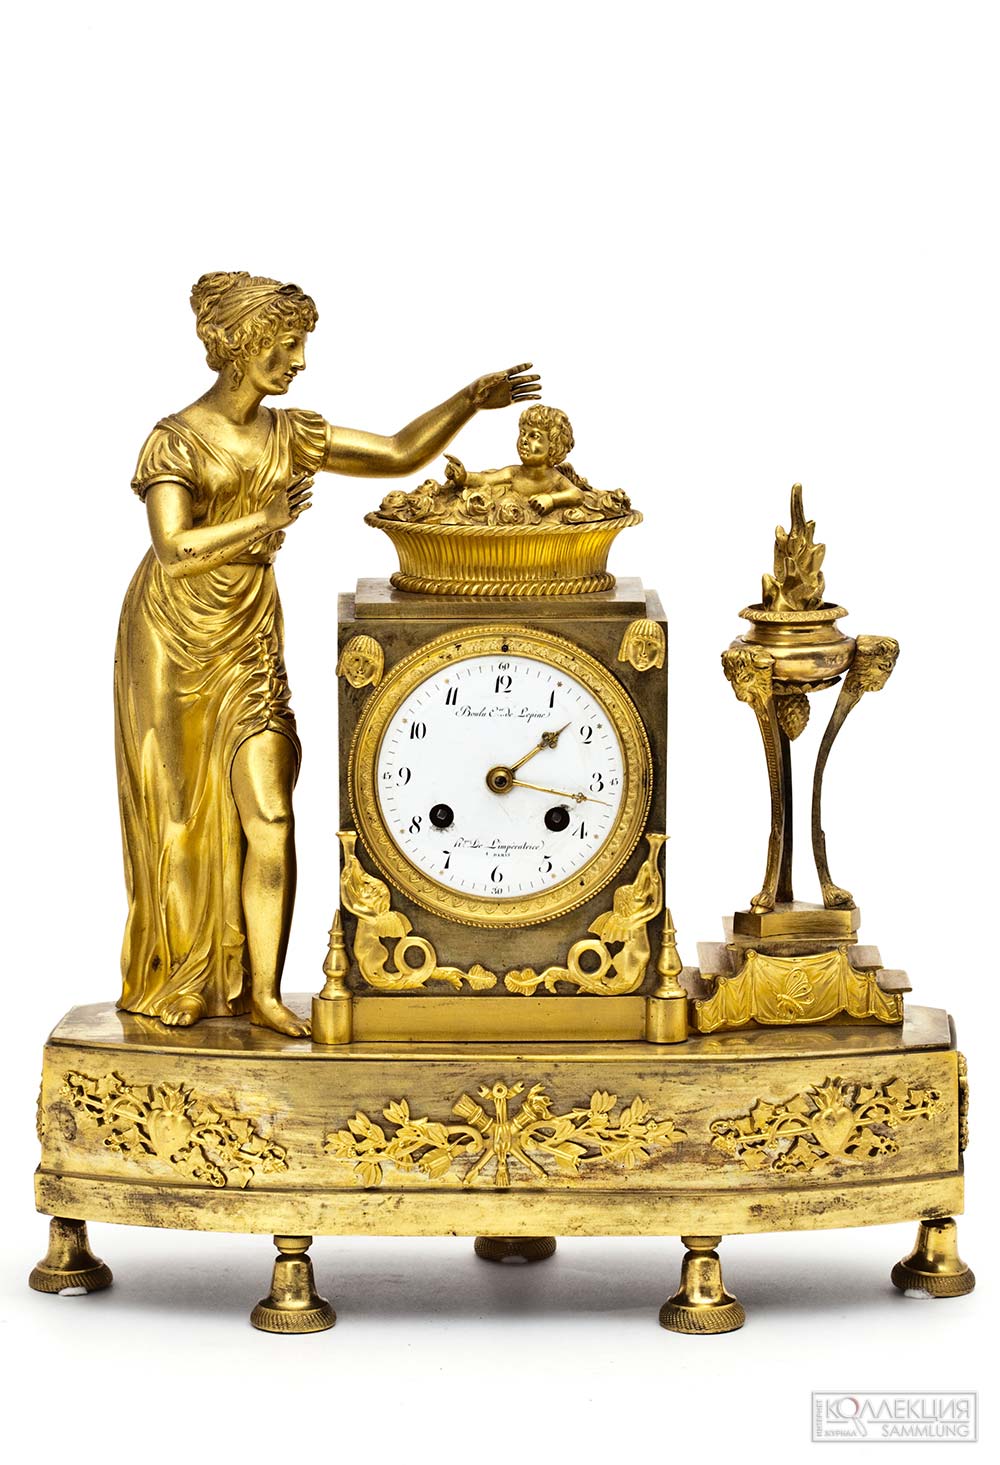 Часы каминные. Рождение Амура. Франция, Париж. Около 1810 года. Часовой мастер Bouolu (Булю) - ученик Лепена, часовщика императрицы